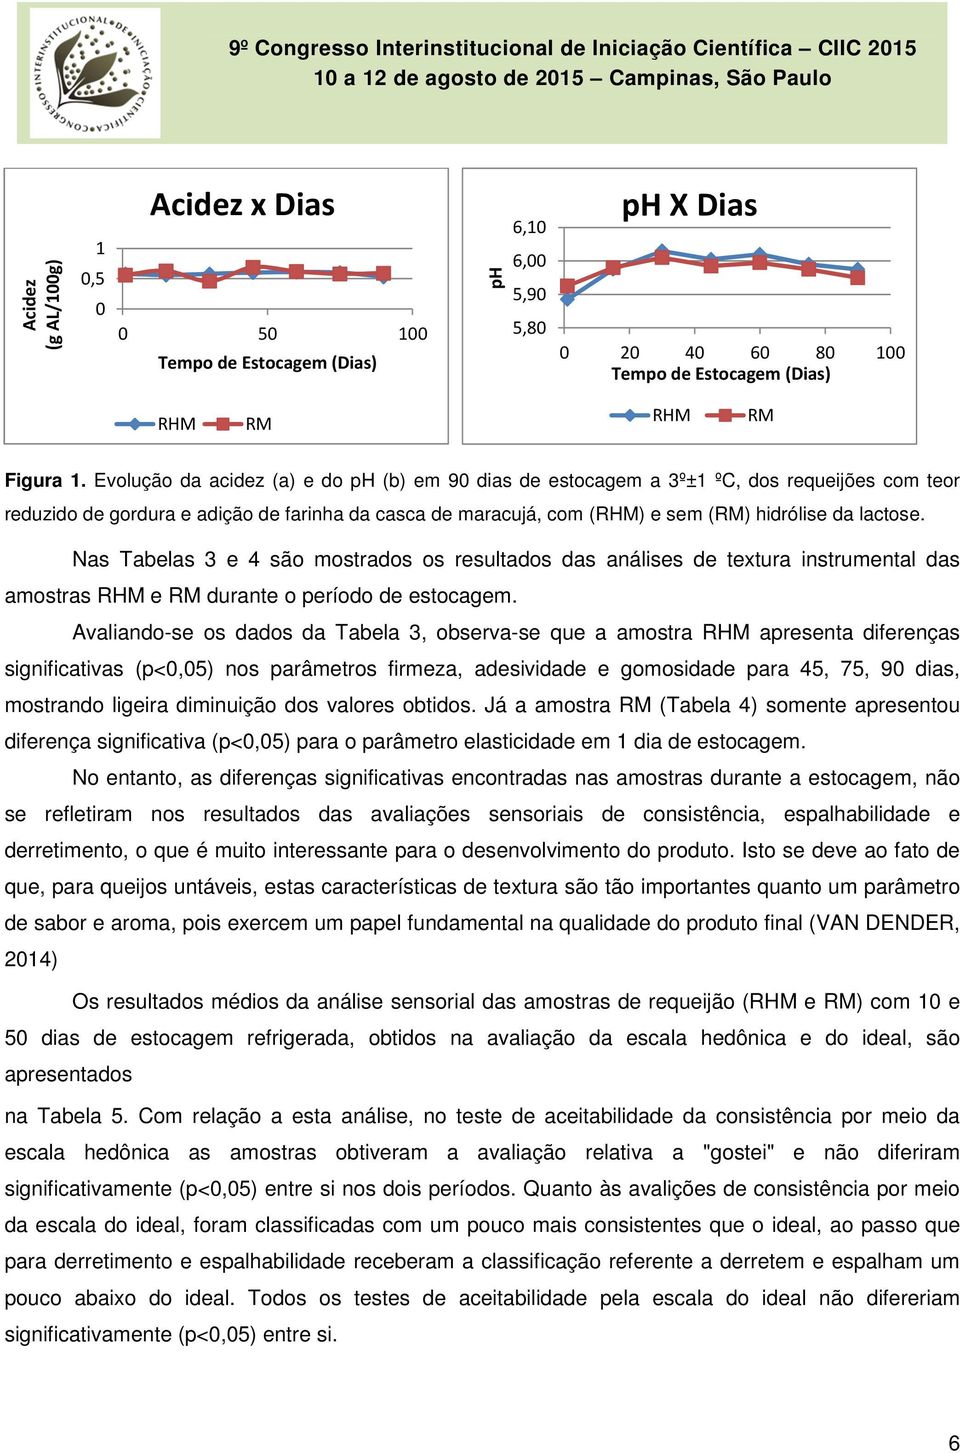 Nas Tabelas 3 e 4 são mostrados os resultados das análises de textura instrumental das amostras RHM e RM durante o período de estocagem.